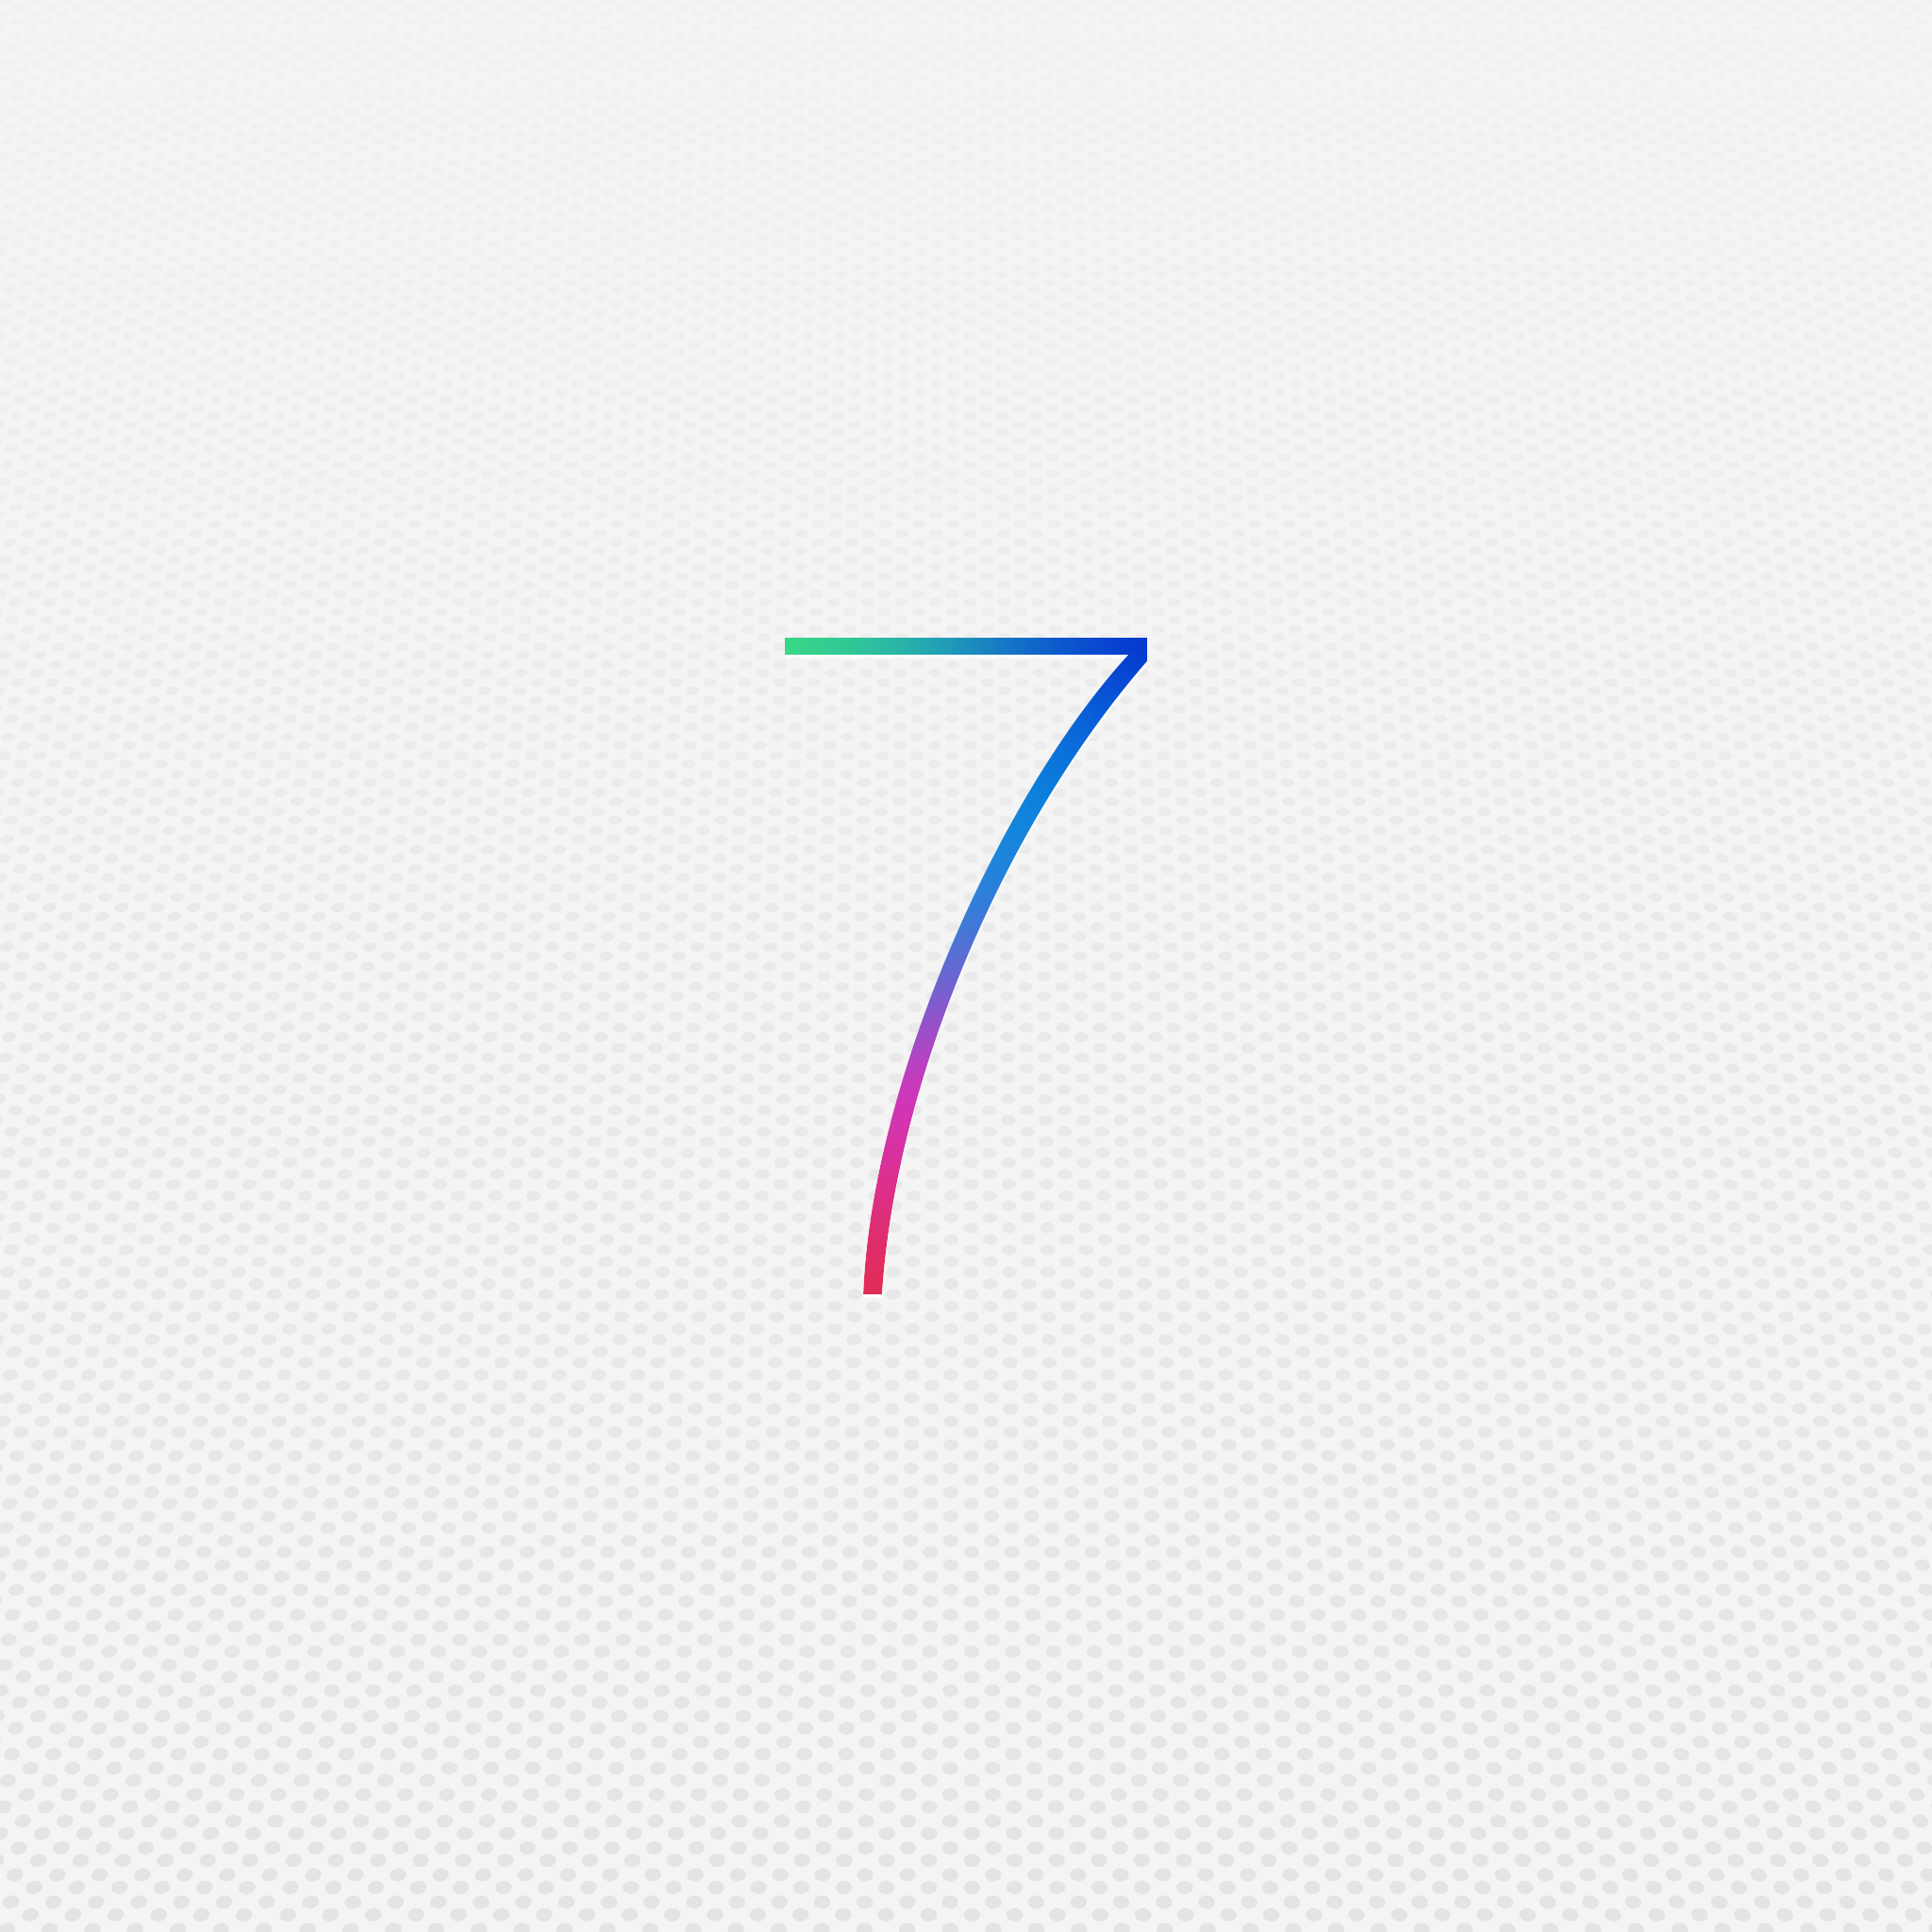 iOS 7 Beta 3 ile Gelen İyileştirmeler ve Yenilikler